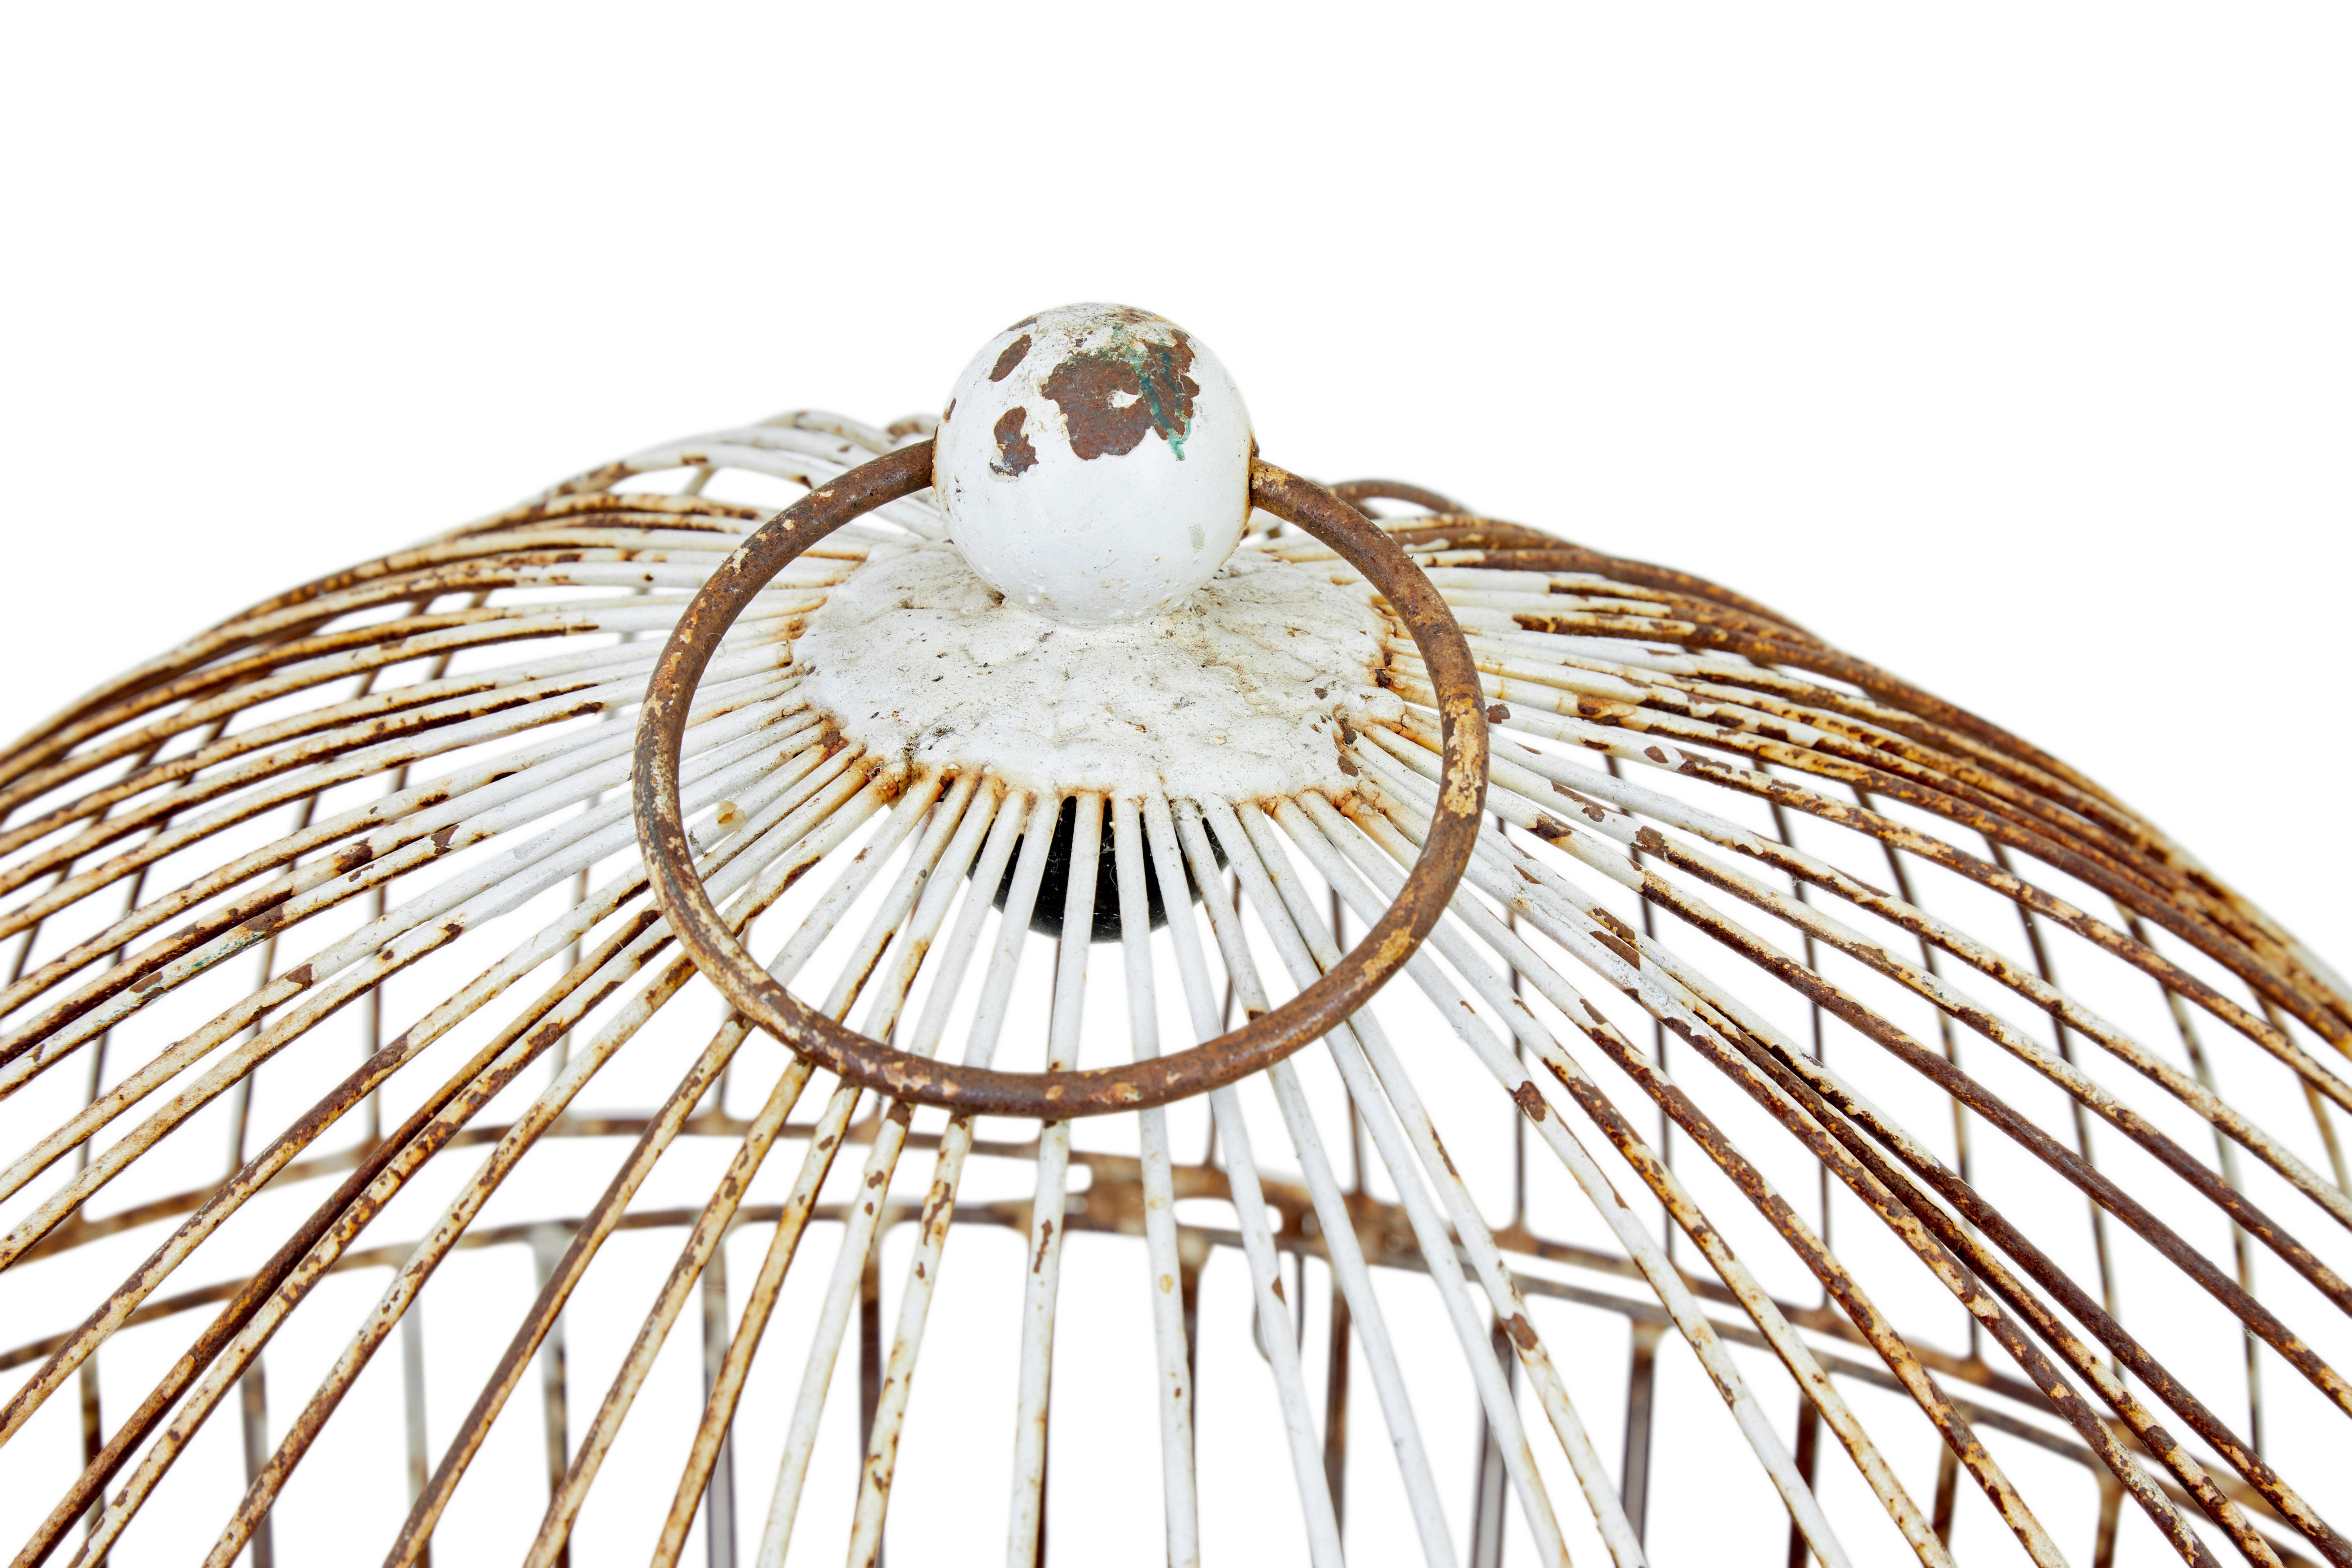 Grande cage à oiseaux décorative en fil de fer du 19e siècle, vers 1890.

Grande cage à perroquets en grillage.

2 parties, avec dôme amovible et anneau de fixation. Aucun accessoire n'est inclus. Pièce décorative idéale. Il faudra faire quelques